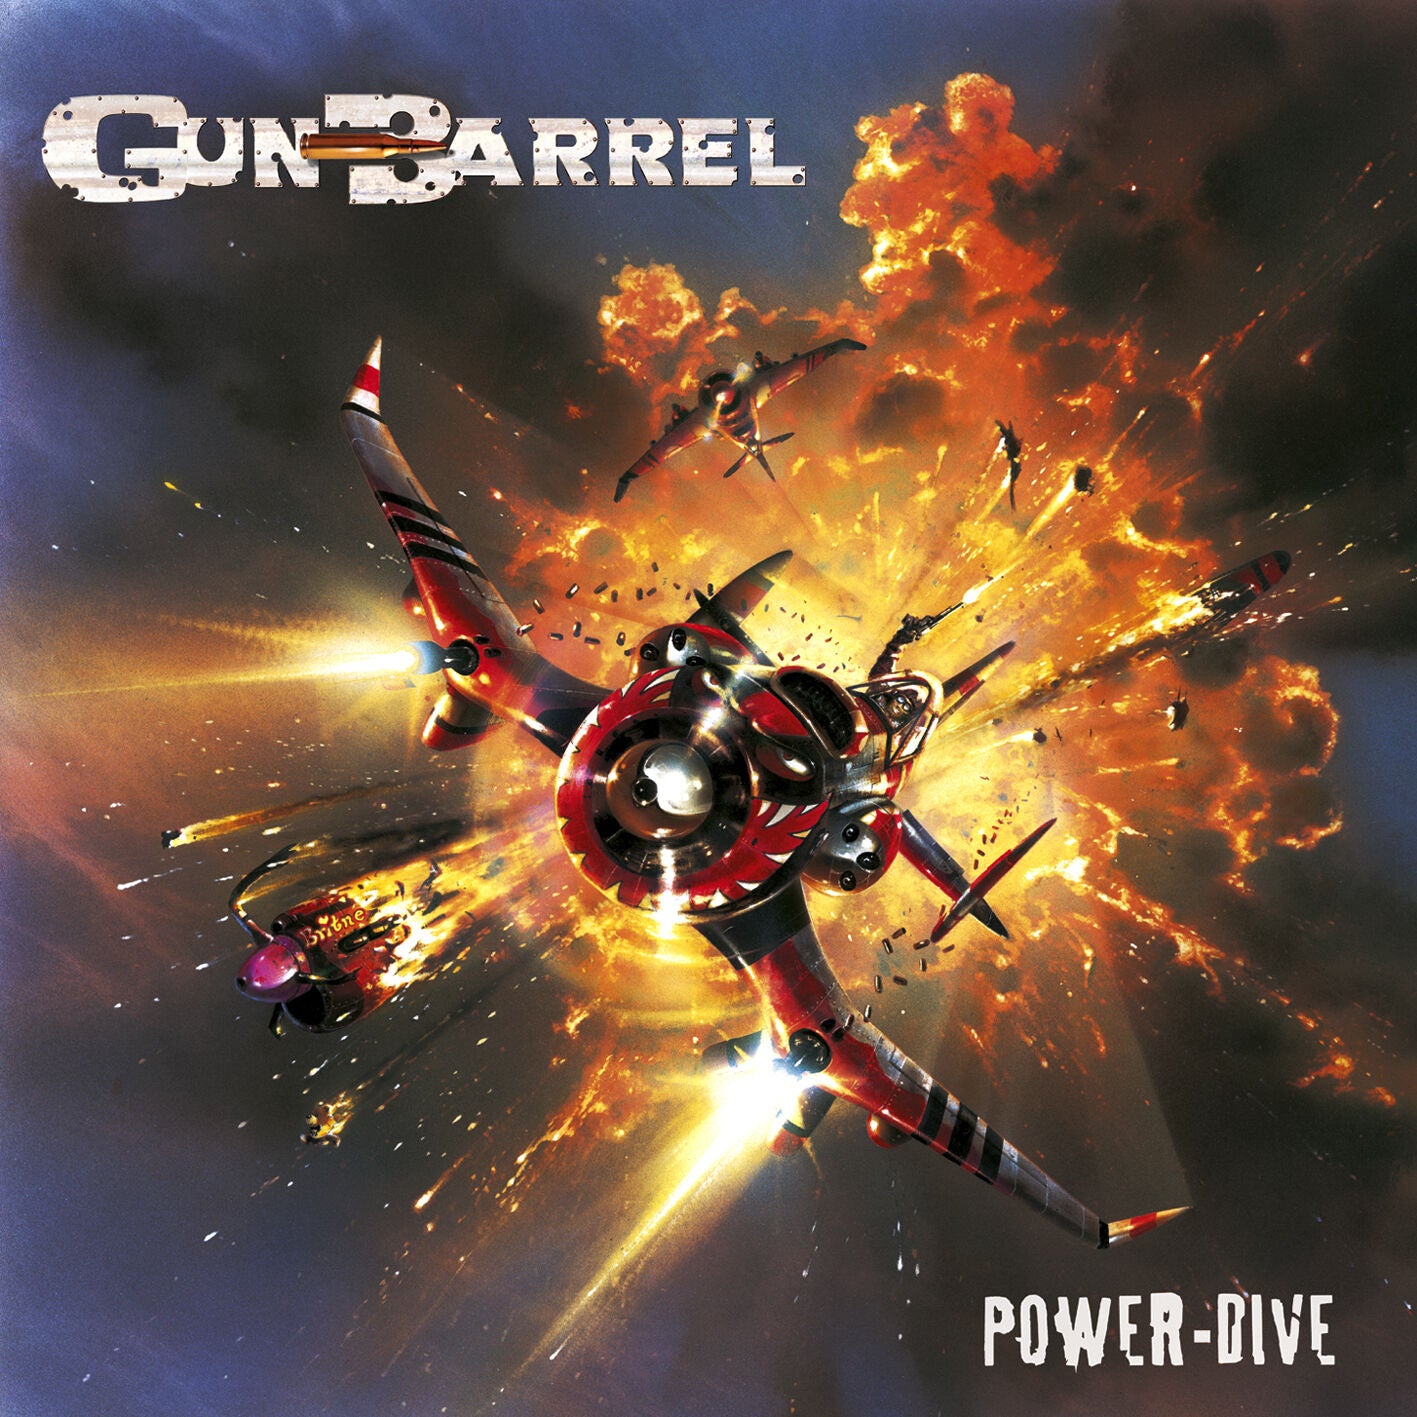 GUN BARREL - Power-Dive CD 2001 Kick-Ass Rock'n'Roll